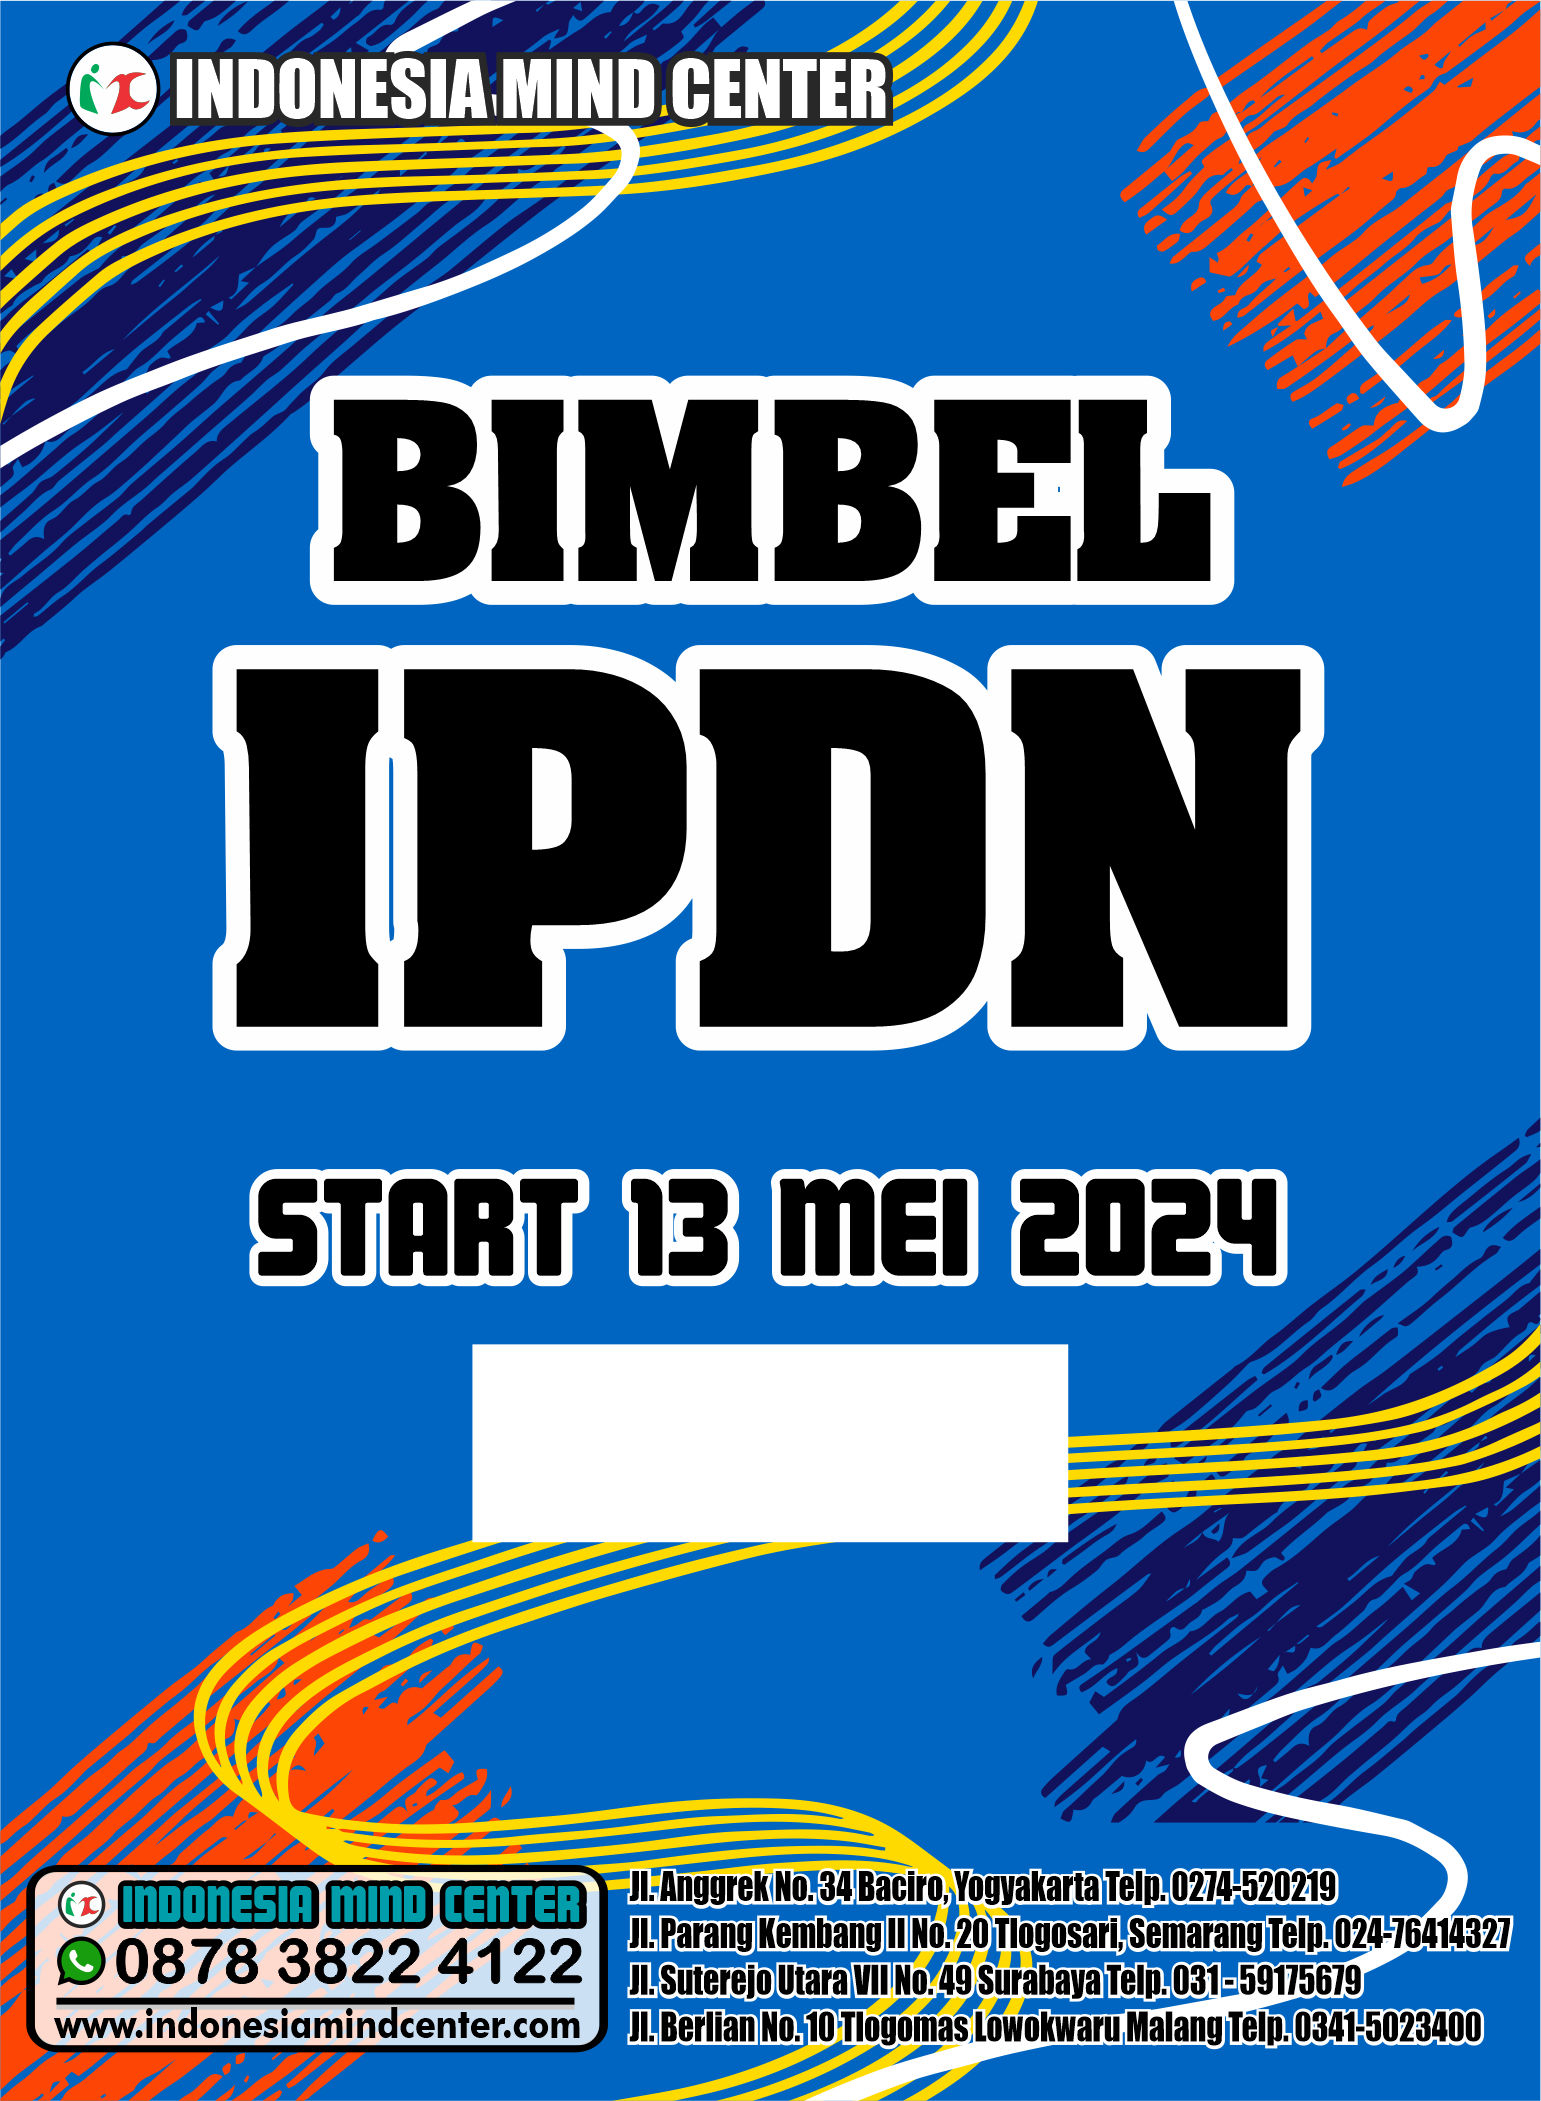 BIMBEL IPDN START 13 MEI 2024